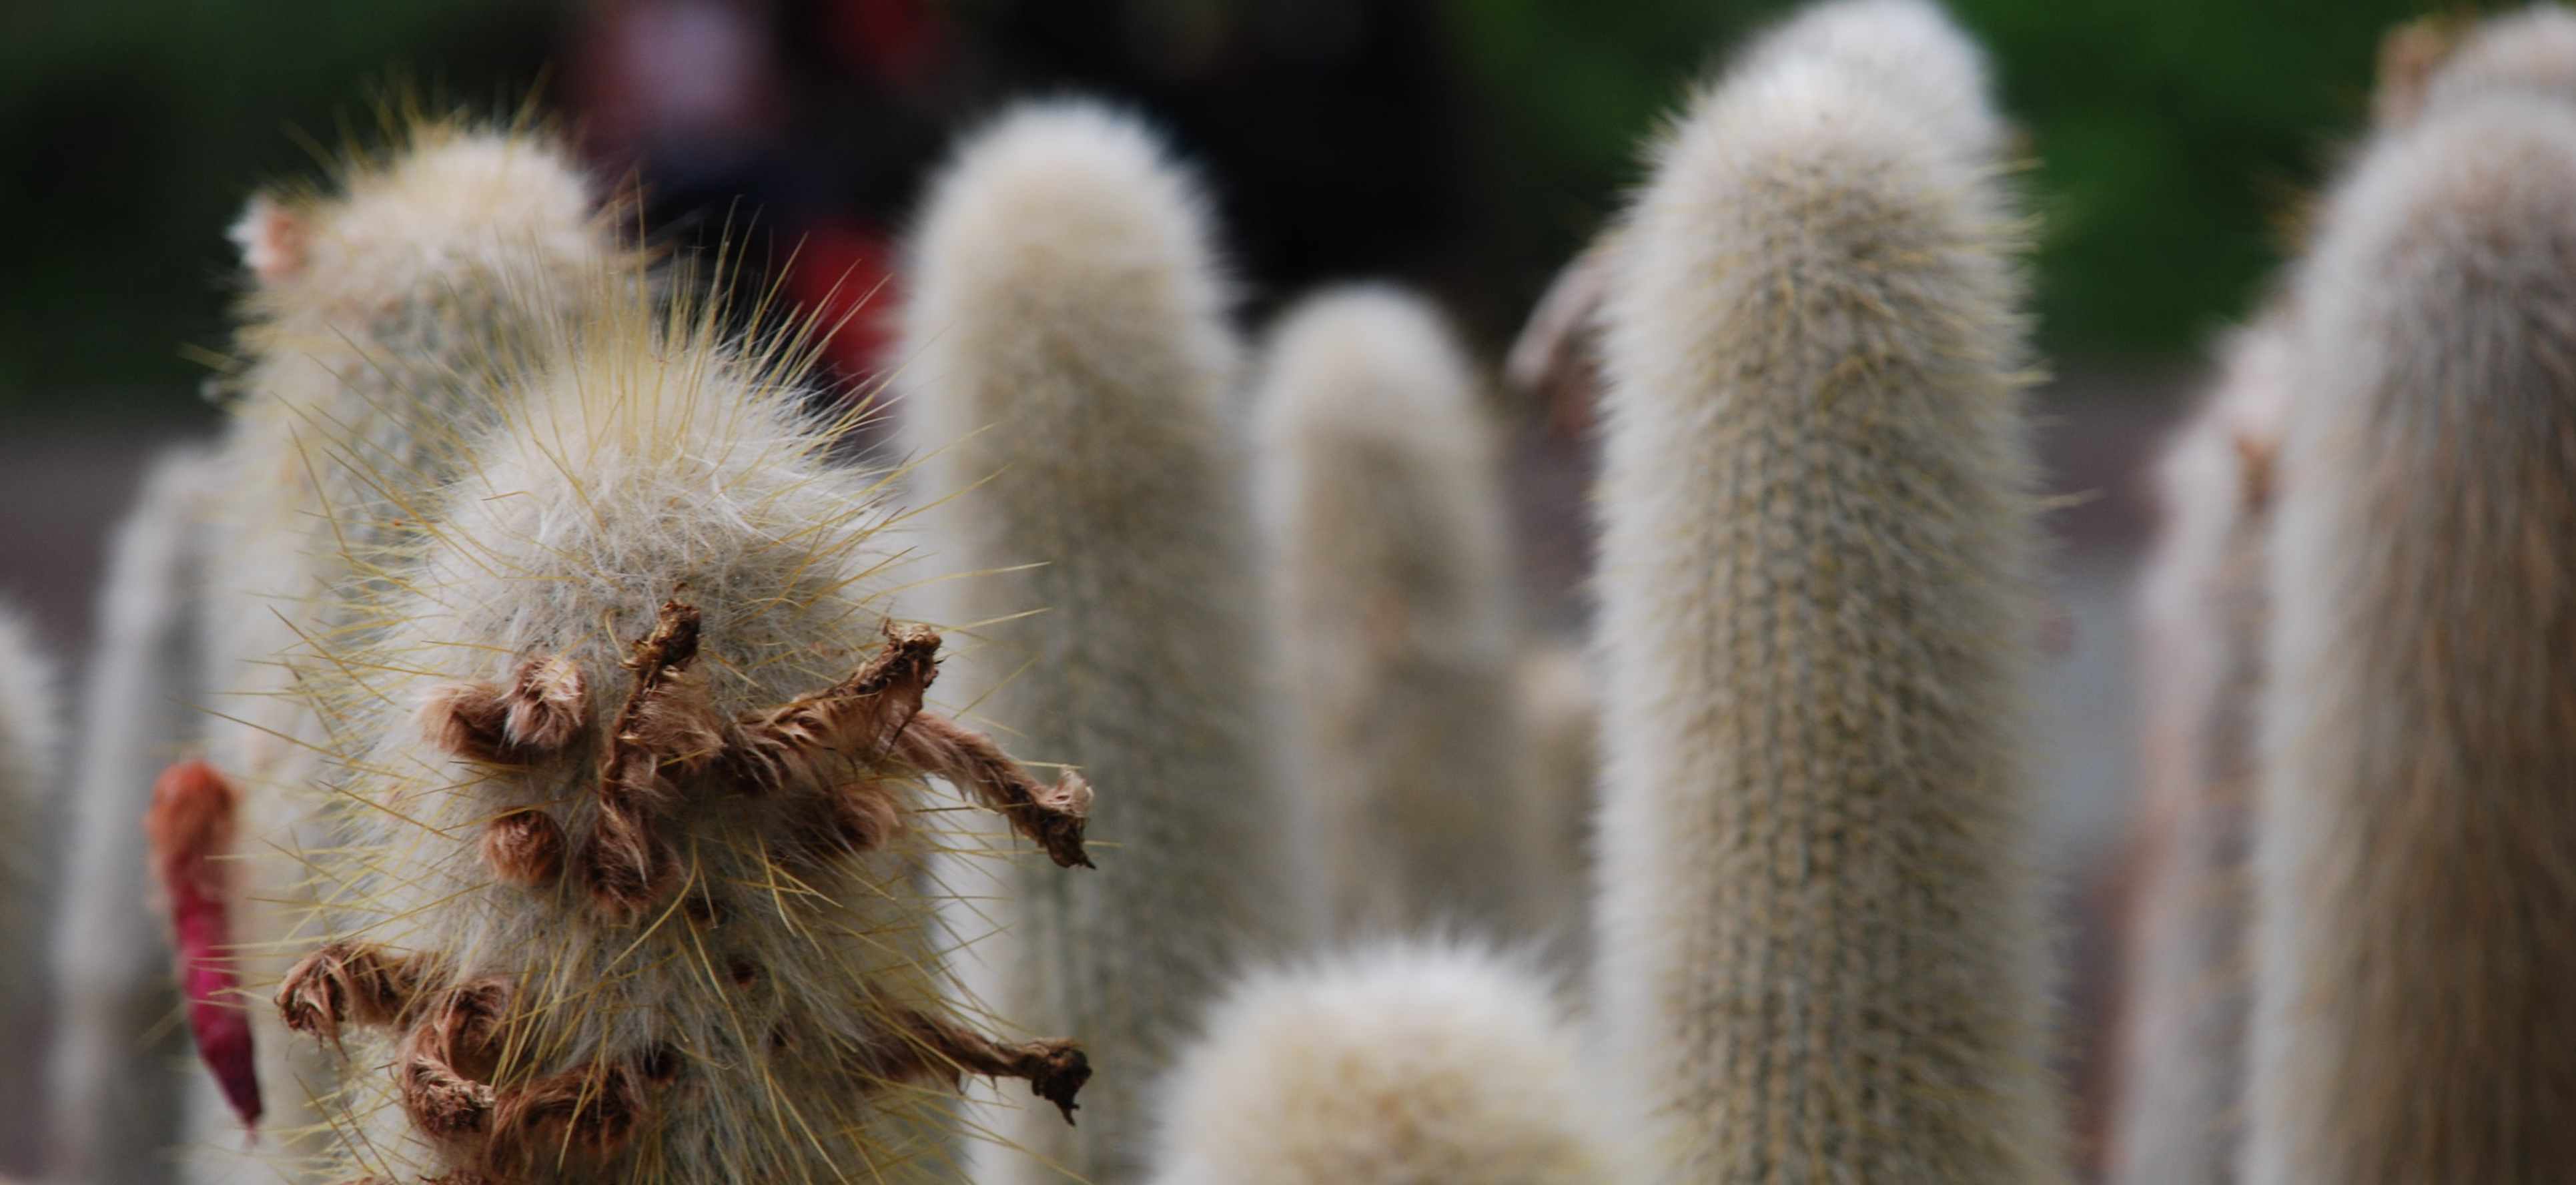 Cactus by gallas